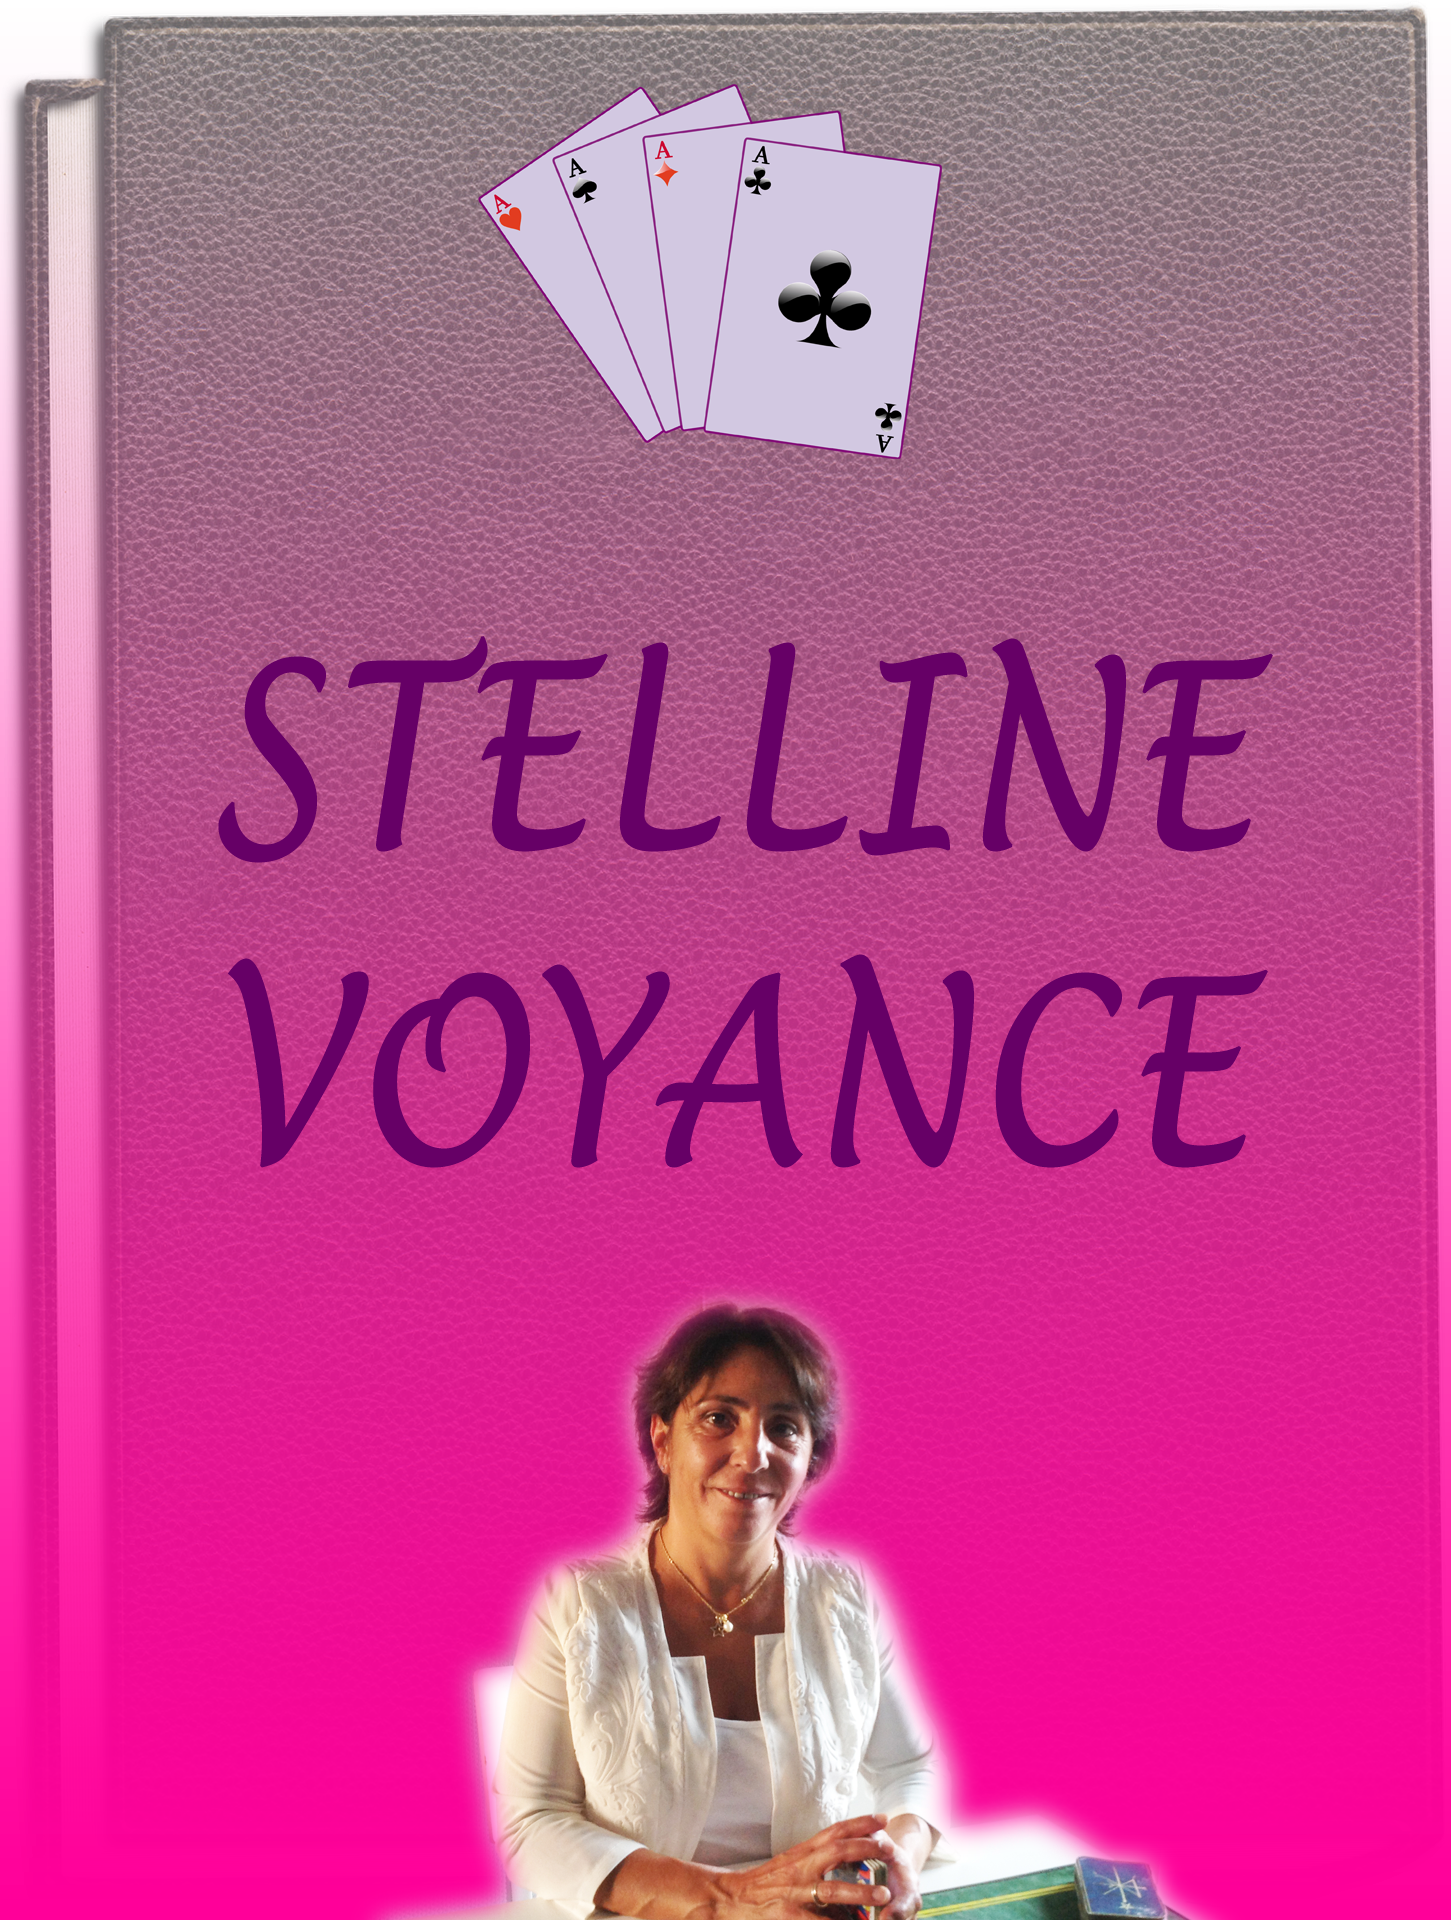 Prédictions 2019 par Stelline Voyance